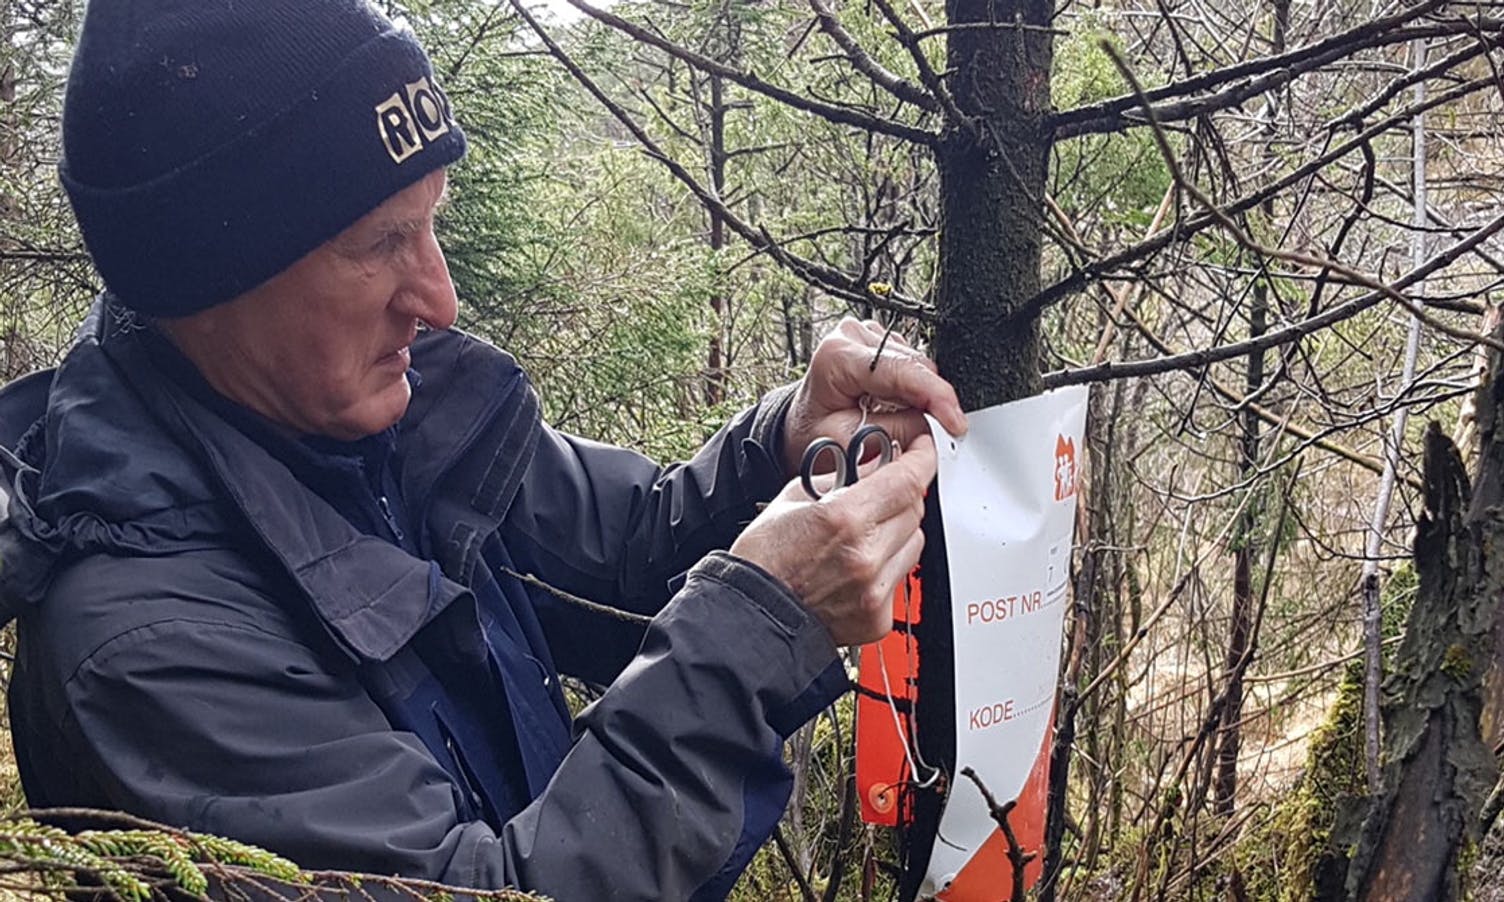 Rolf Nord er aktiv orienteringsløper og henger ut turorienteringspostene i Prestegardskogen. (Foto: Privat)